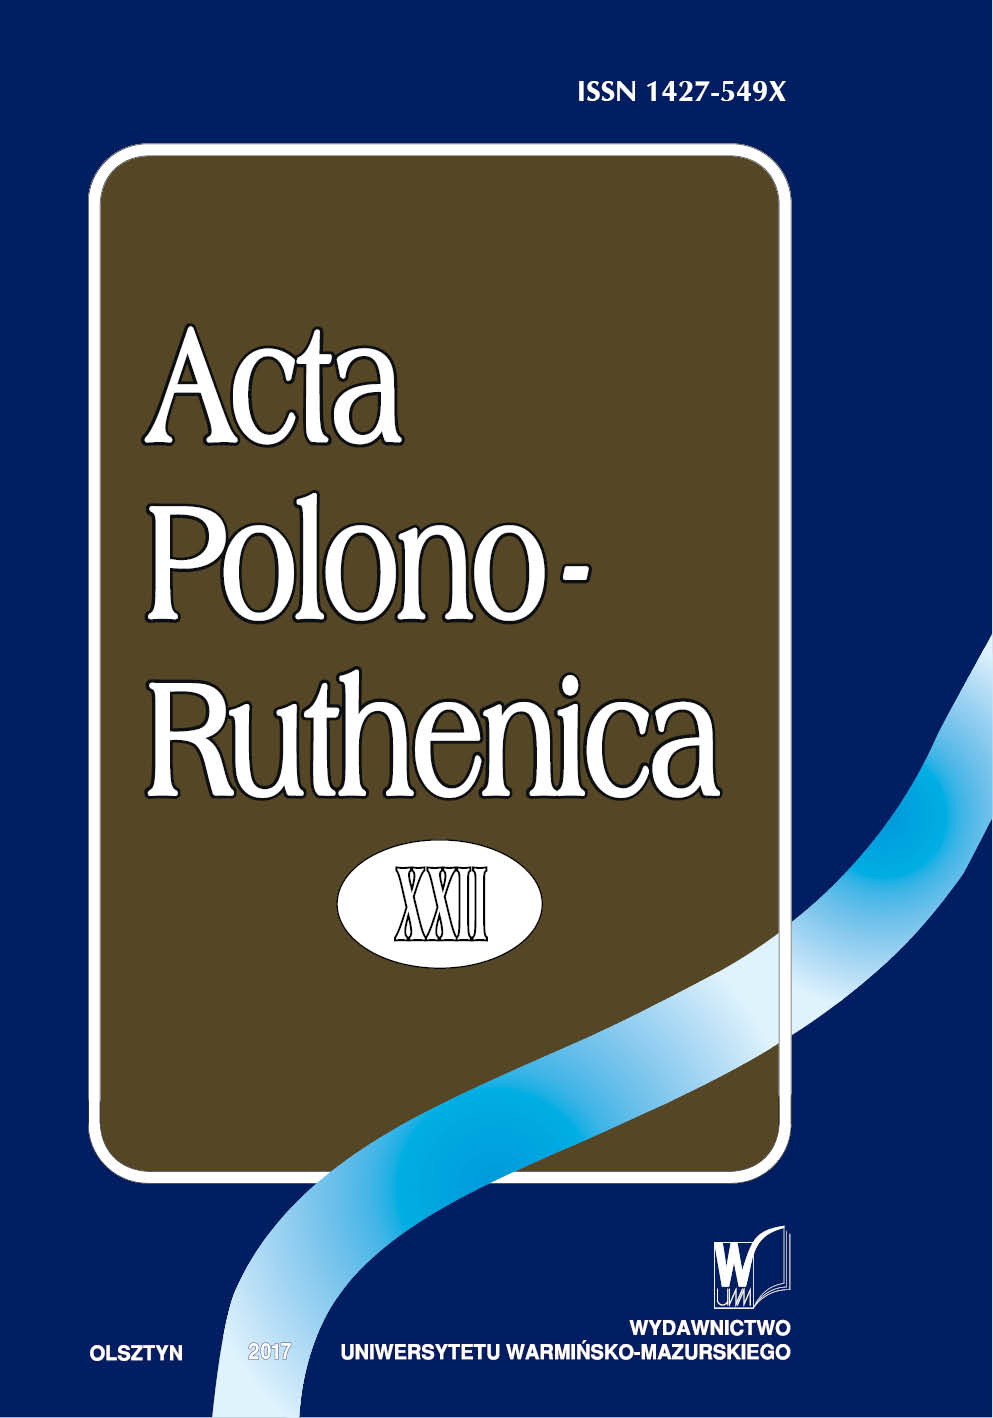 Irena Rudziewicz, Puszkin w Polsce. Bibliografia 1976–2010,
Wydawnictwo UWM, Olsztyn 2016. Cover Image